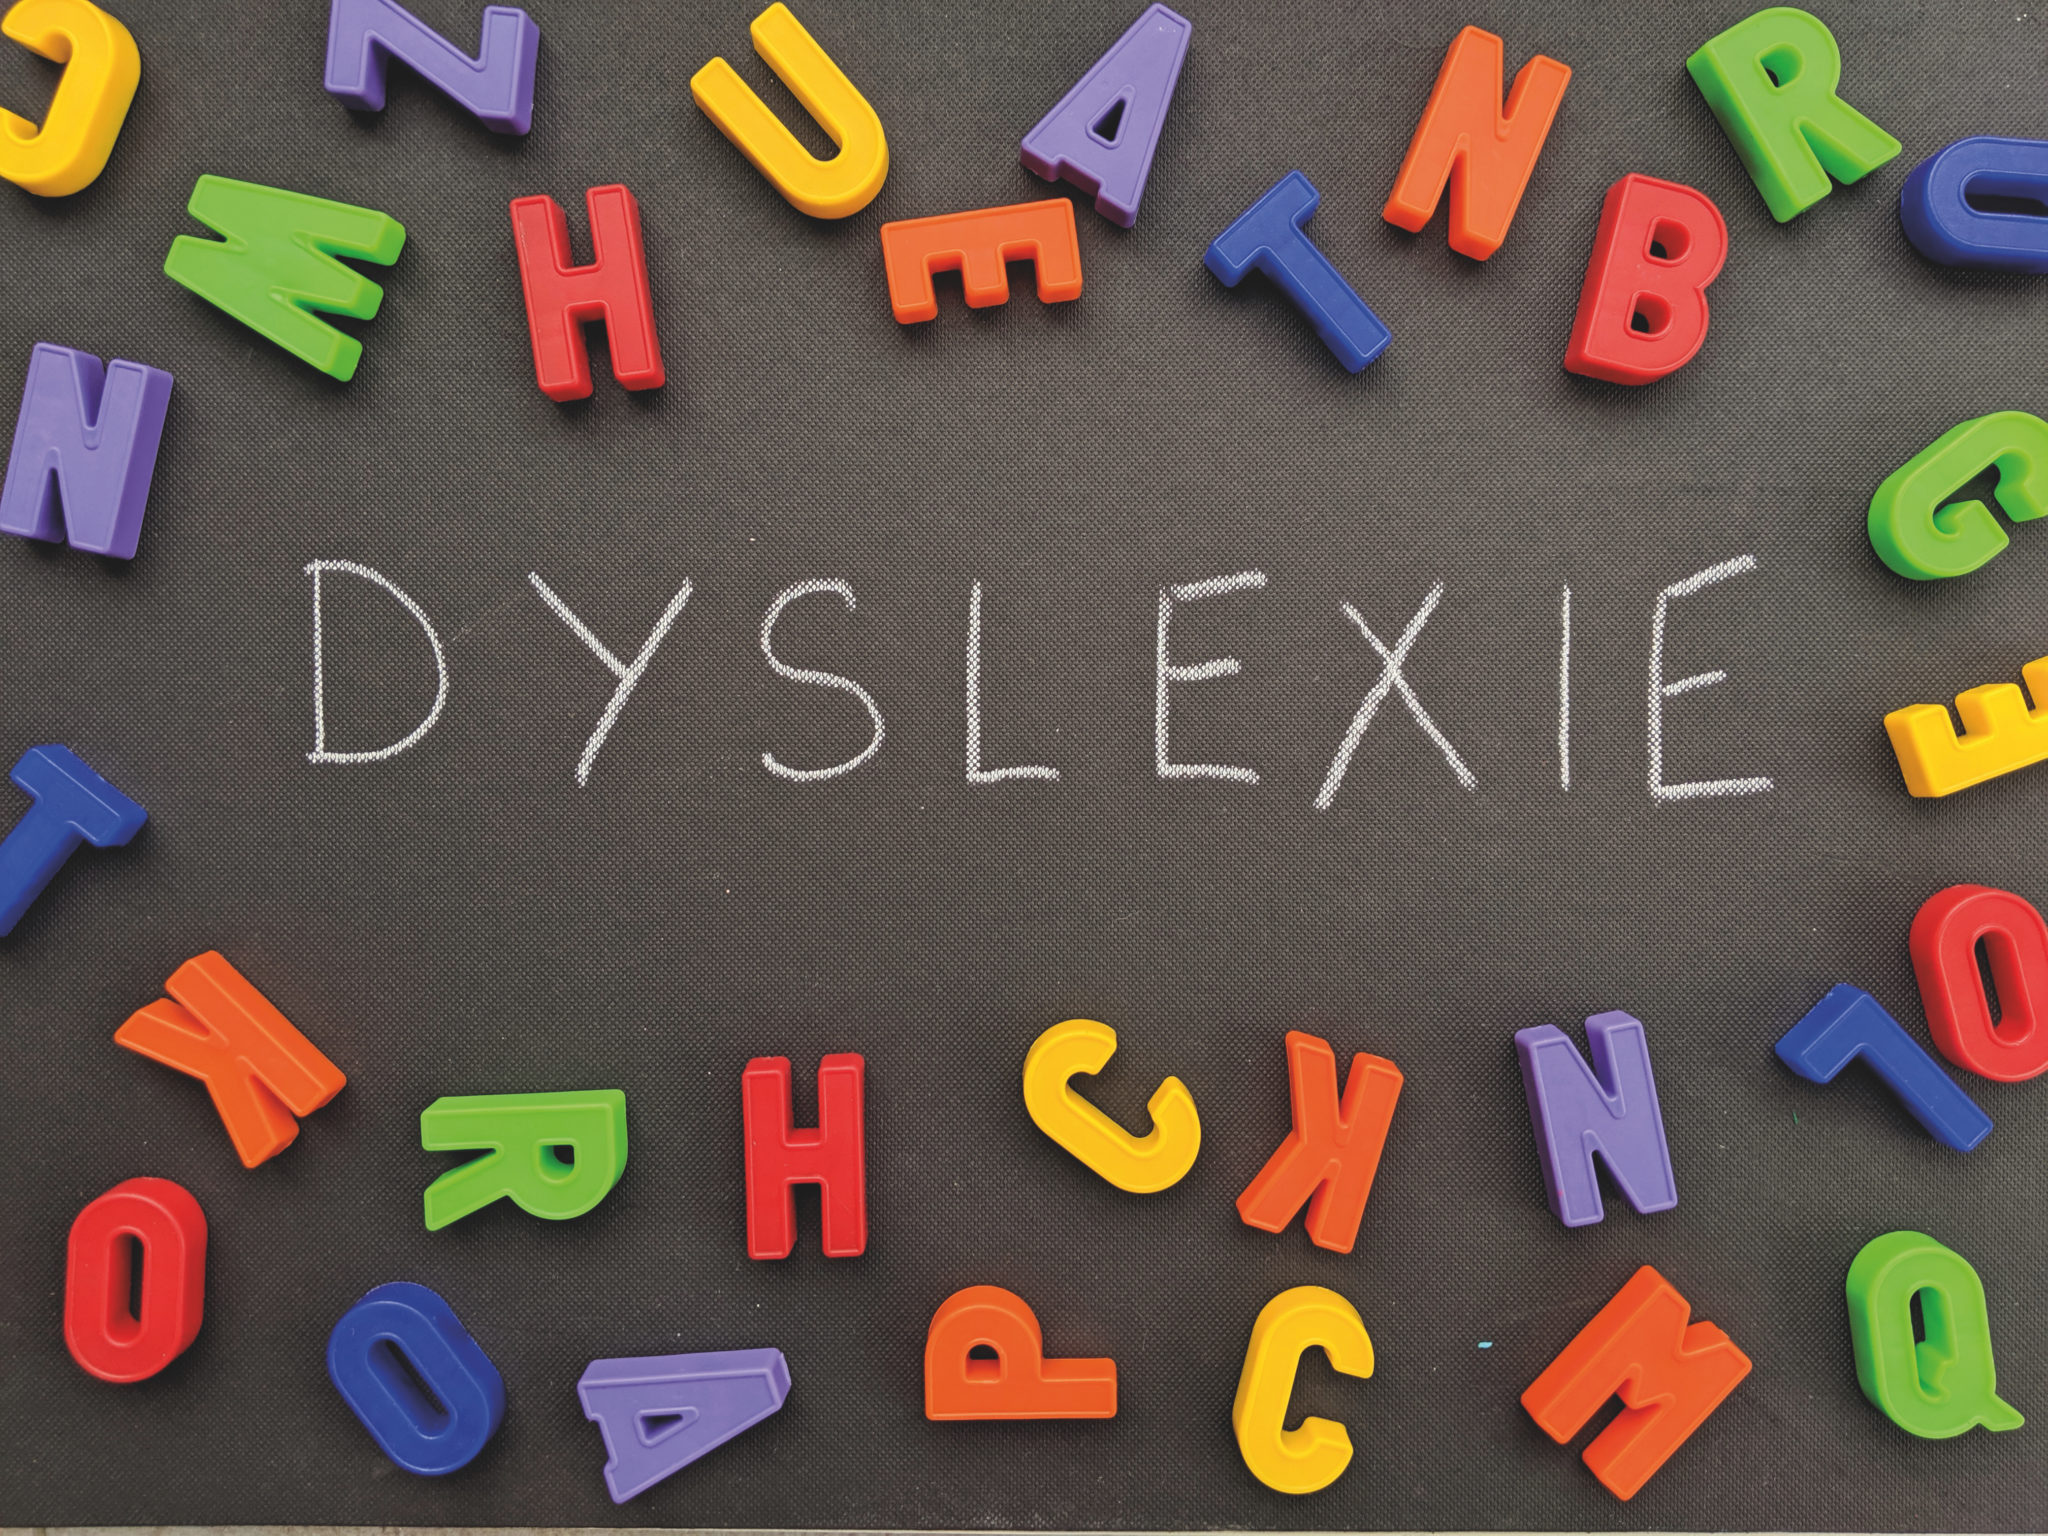 Les livres adaptés aux dyslexiques - Médiathèque du Pays de